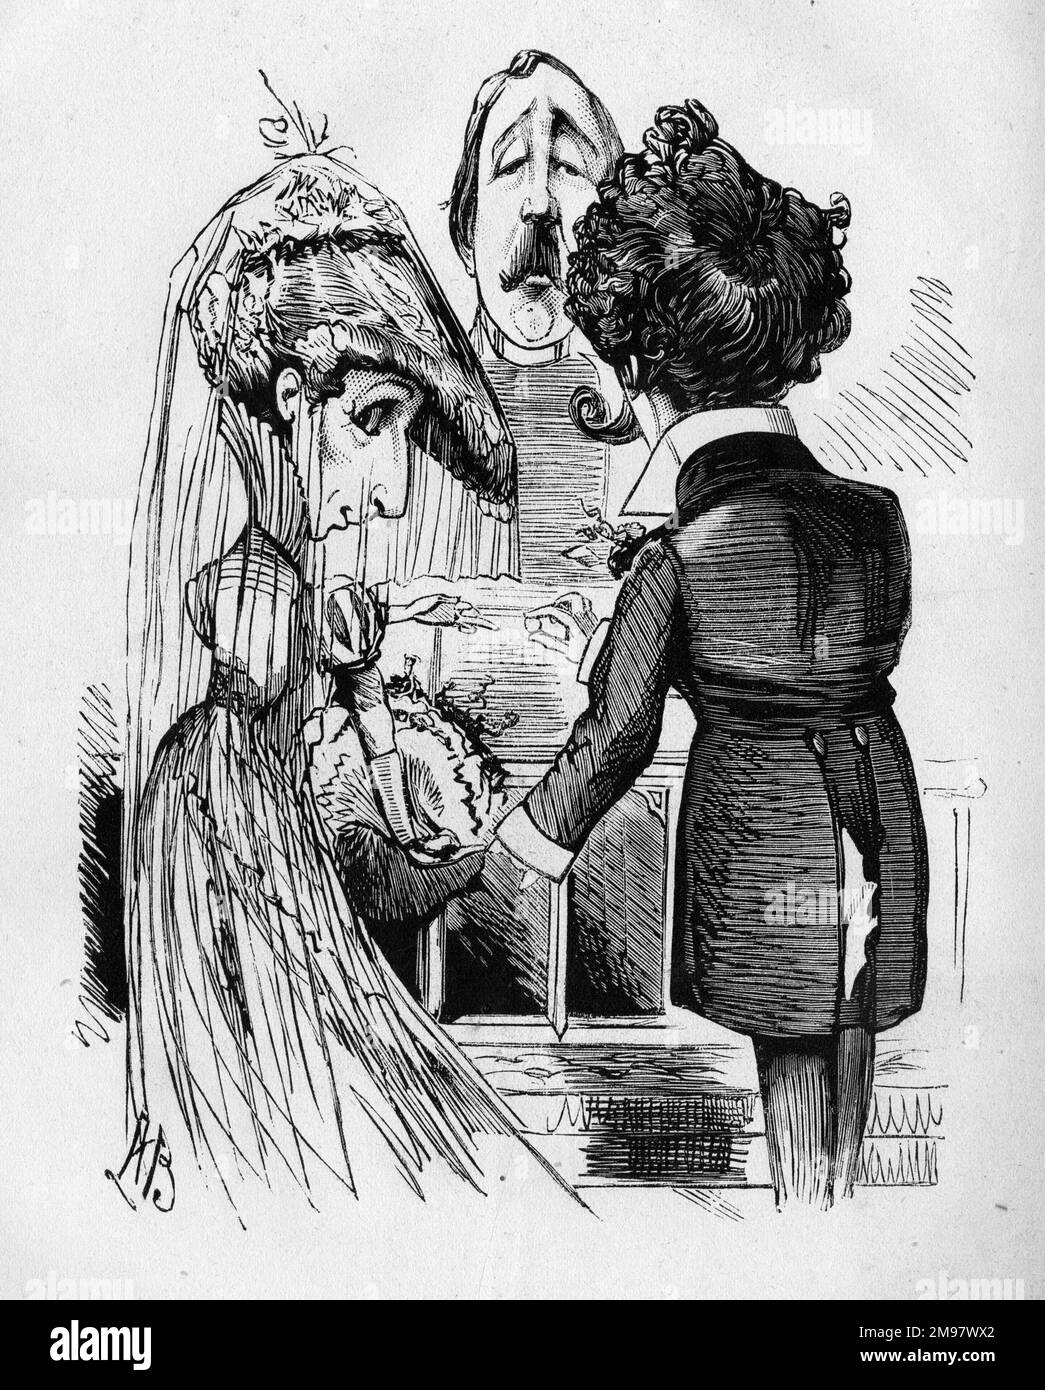 Cartone animato di Sarah Bernhardt (1844-1923), leggendaria attrice francese, visto qui come una sposa con il direttore del teatro John Hollingshead come vicario. Sposò Ambroise Aristide Damala (o Aristides Damalas, 1855-1889), un attore di origine greca, nel 1882. Il matrimonio è stato un disastro. Foto Stock